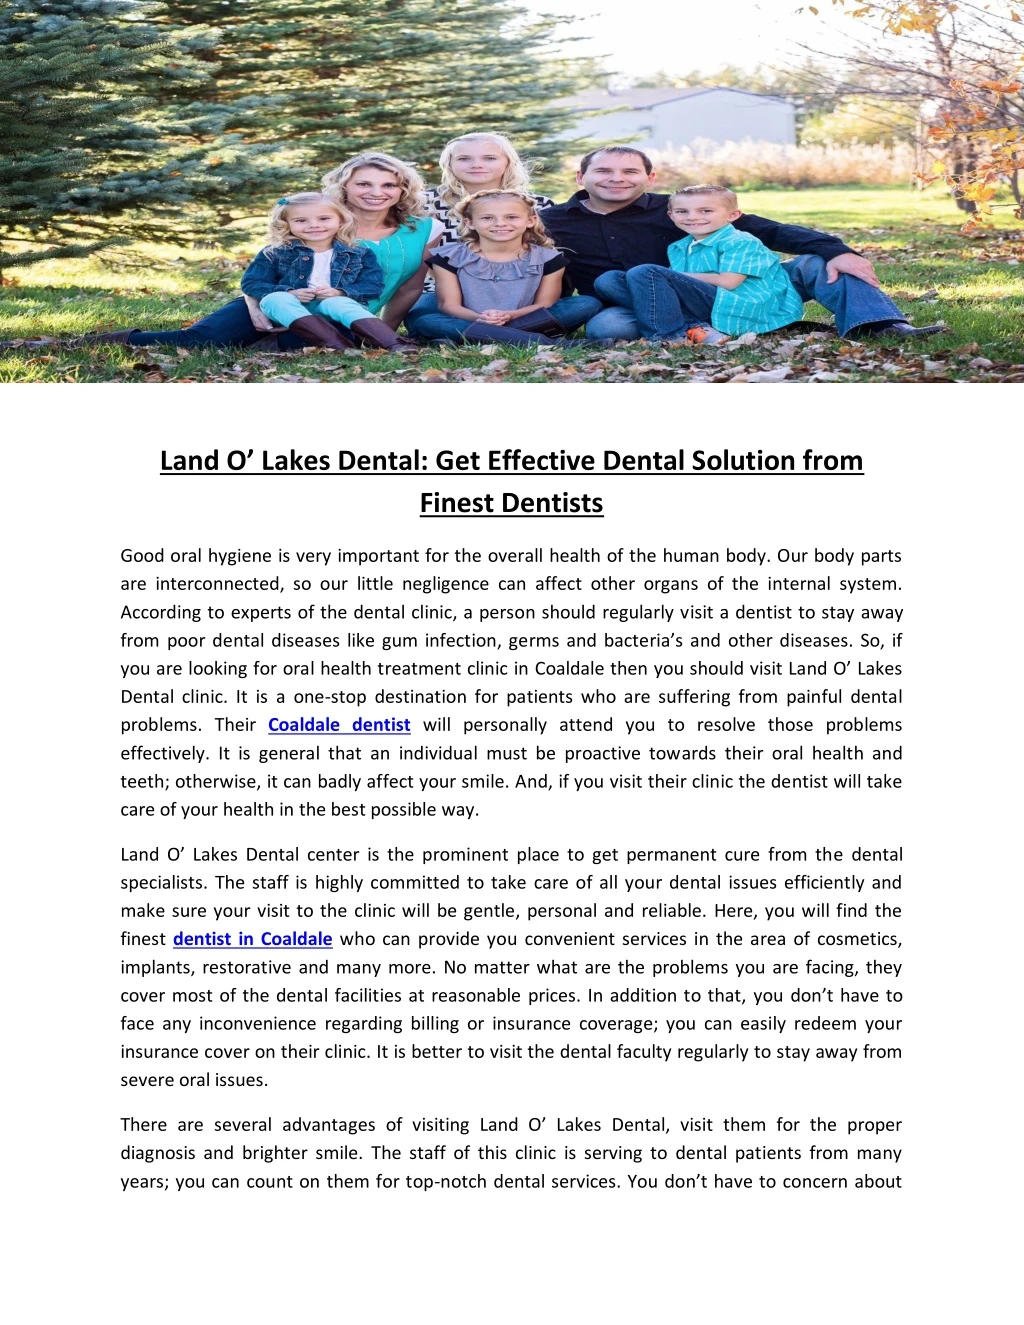 land o lakes dental get effective dental solution